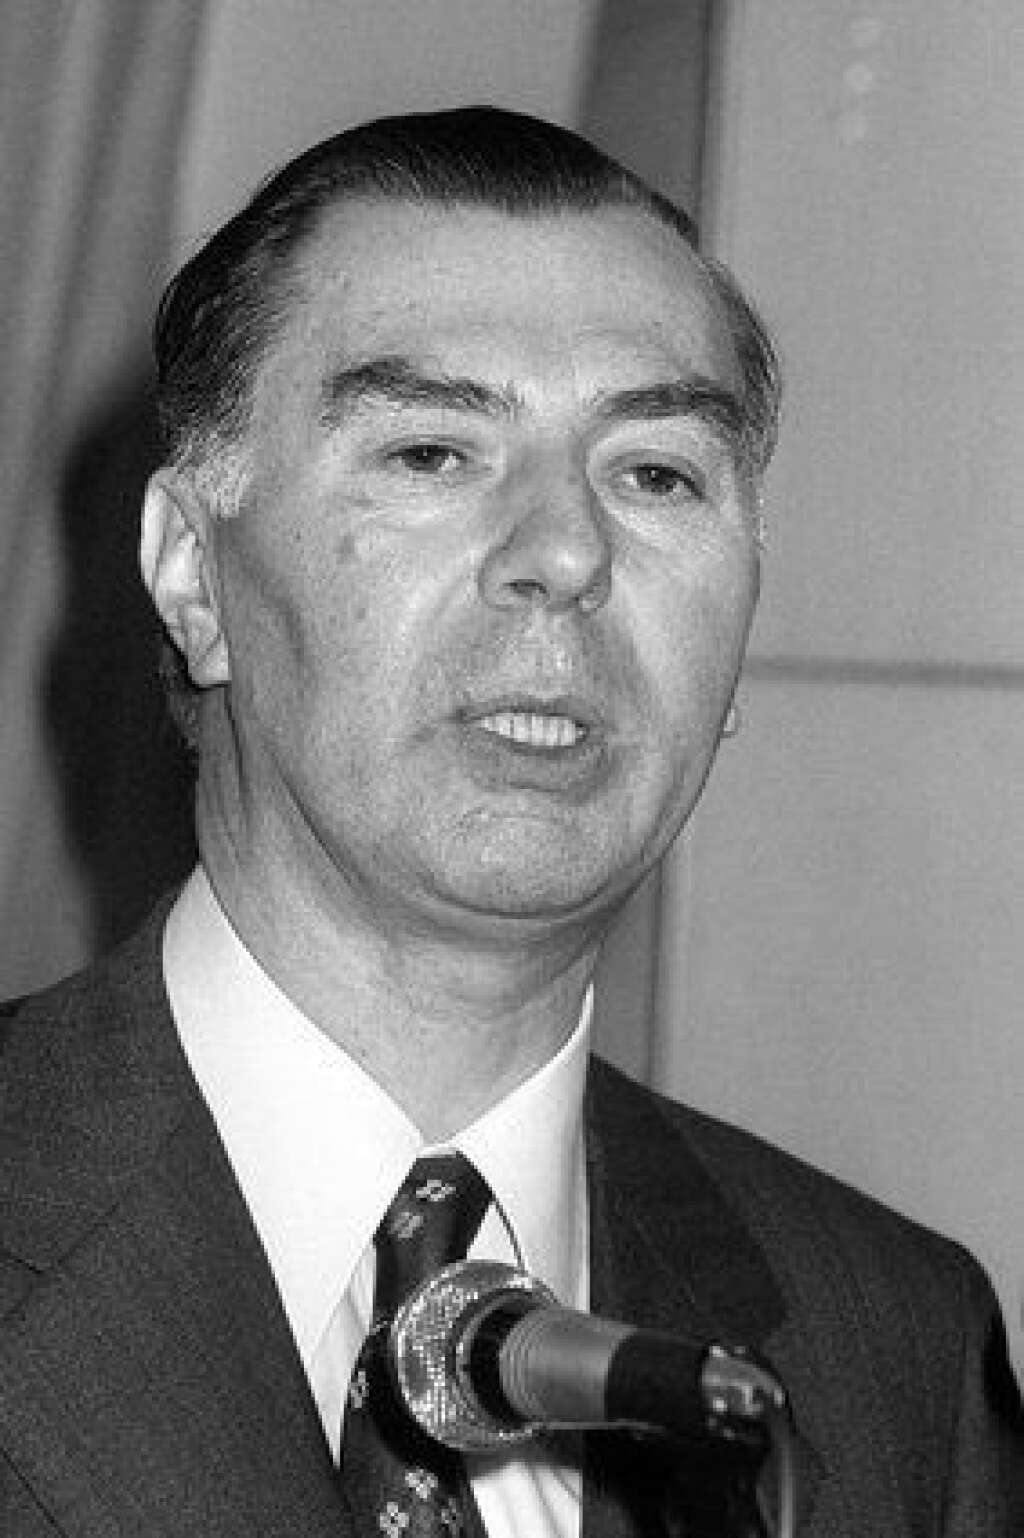 26 décembre - Leo Tindemans - Premier ministre belge de 1974 à 1979 et président du Parti populaire européen pendant presque une décennie